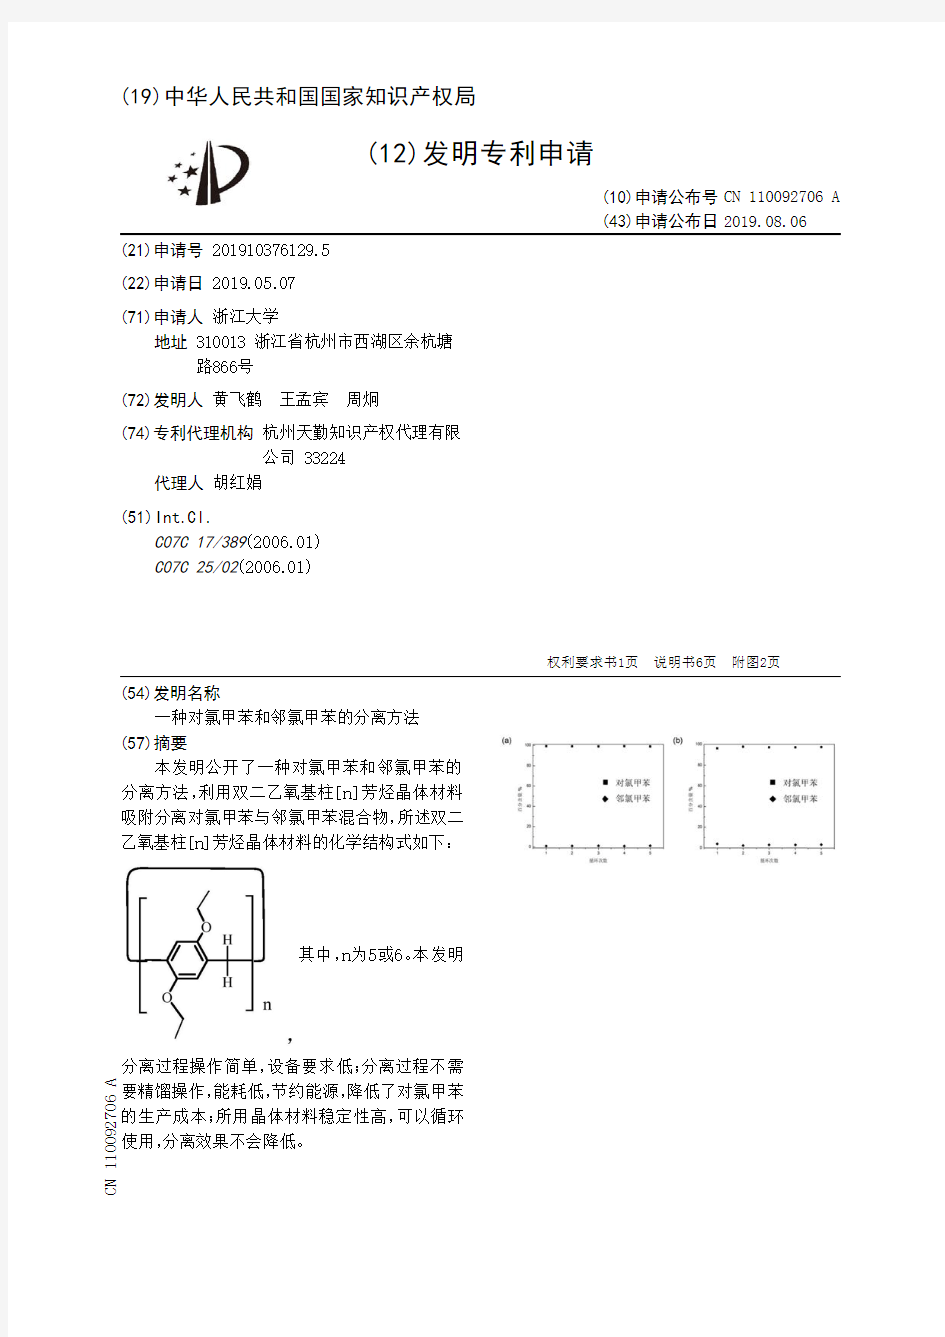 【CN110092706A】一种对氯甲苯和邻氯甲苯的分离方法【专利】